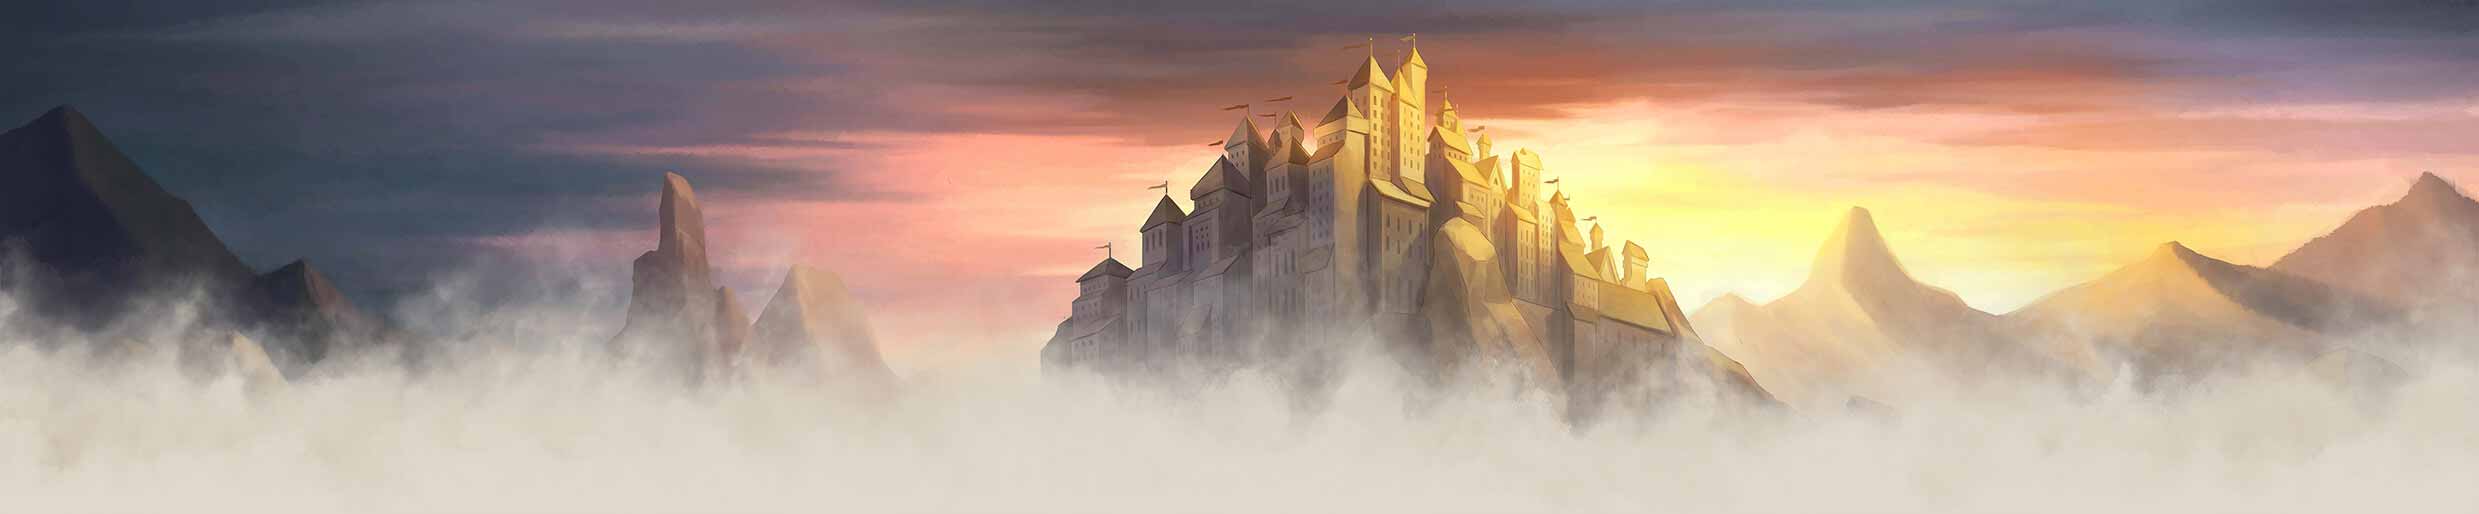 Travian: 傳奇城堡背景雲端